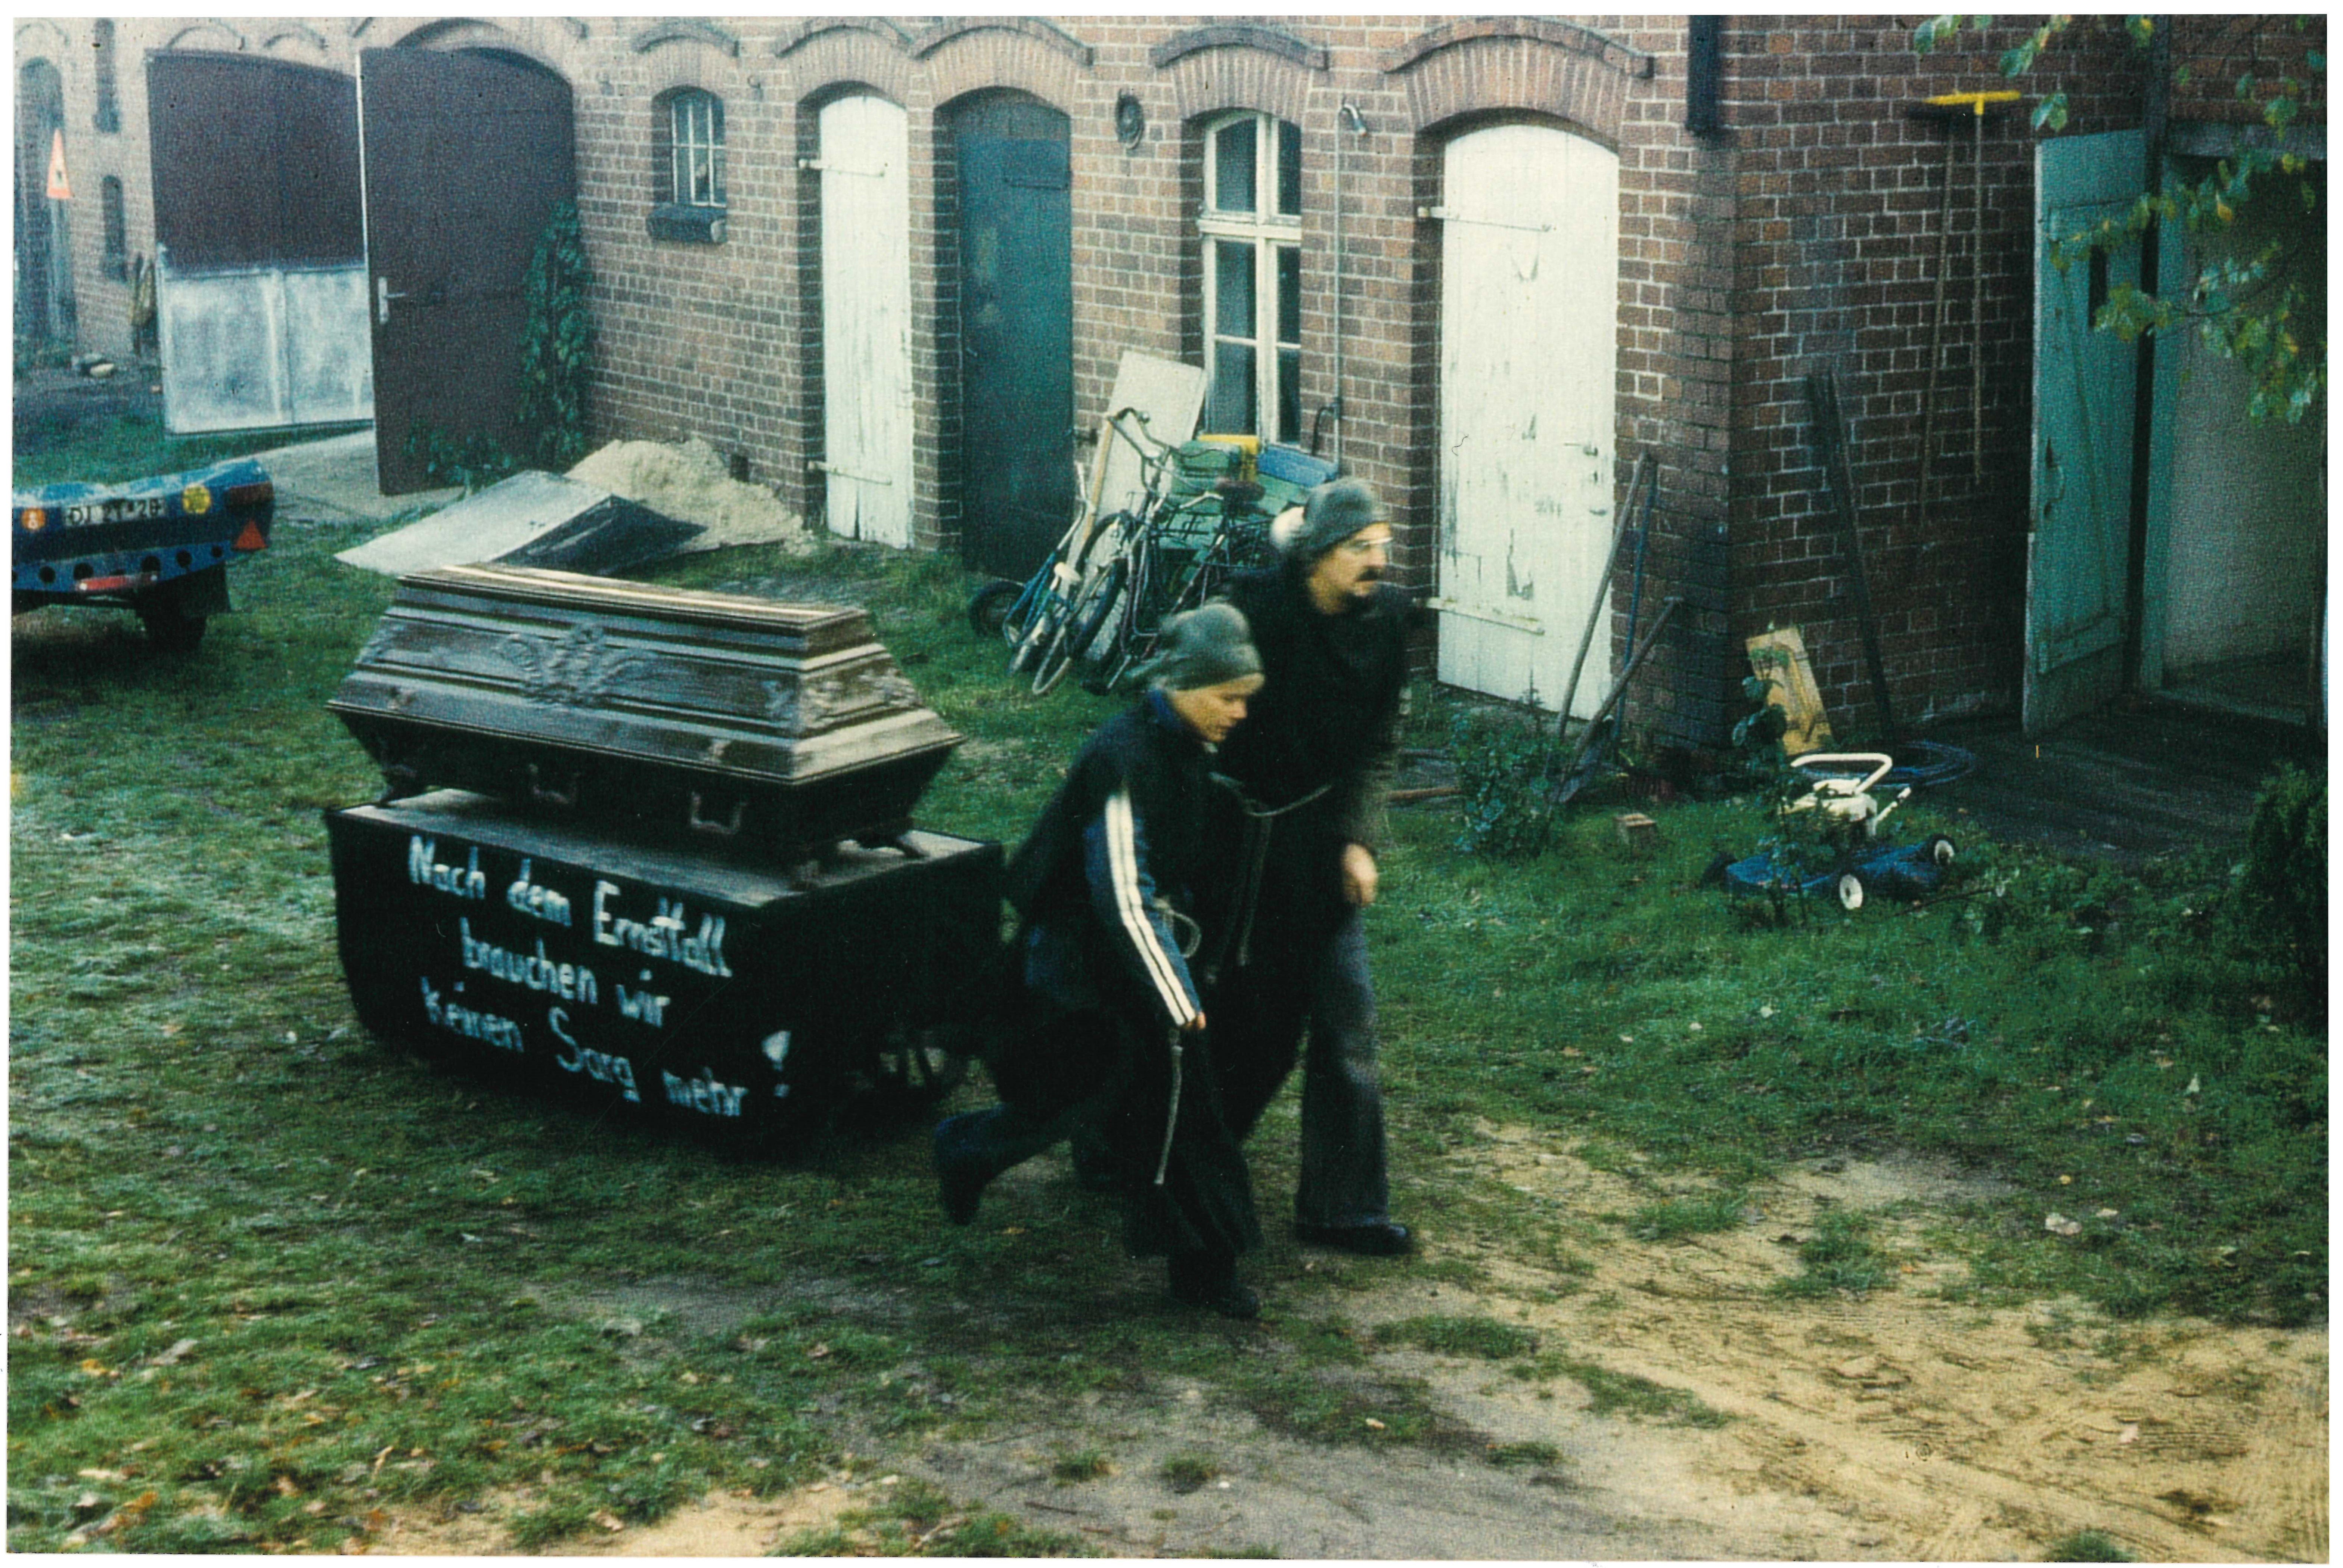 Hans-Peter und Gisela Freimark vor ihrem Haus in Neustadt während ihres Protests gegen die Atomschlagübung "Dosse 83" (DDR Geschichtsmuseum im Dokumentationszentrum Perleberg CC BY-SA)